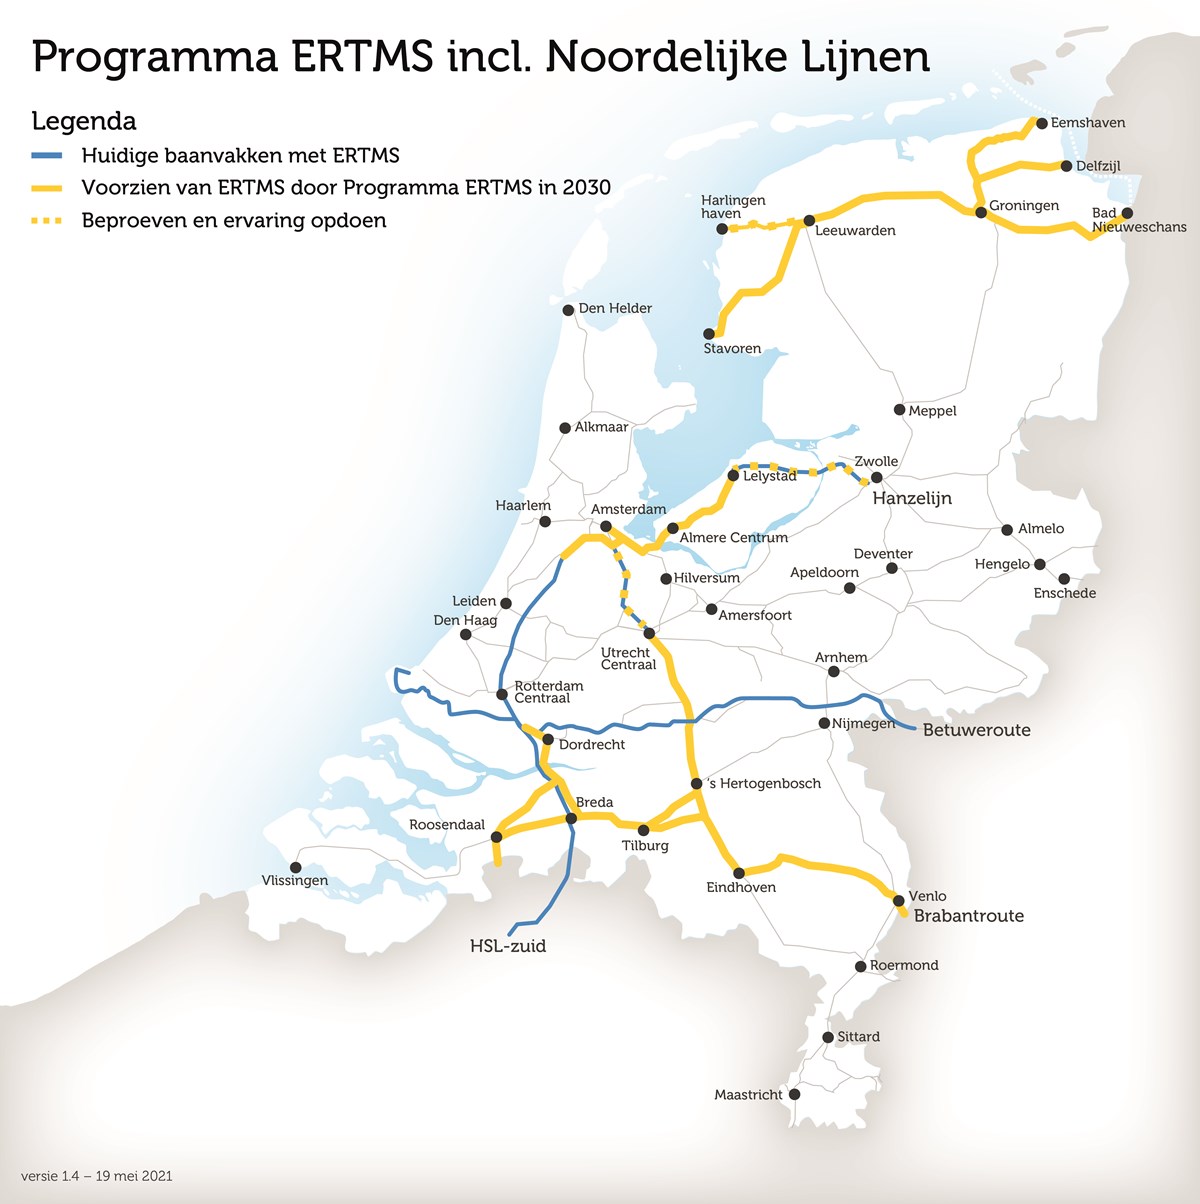 Op deze kaart staan de baanvakken die al ERTMS hebben of nog krijgen